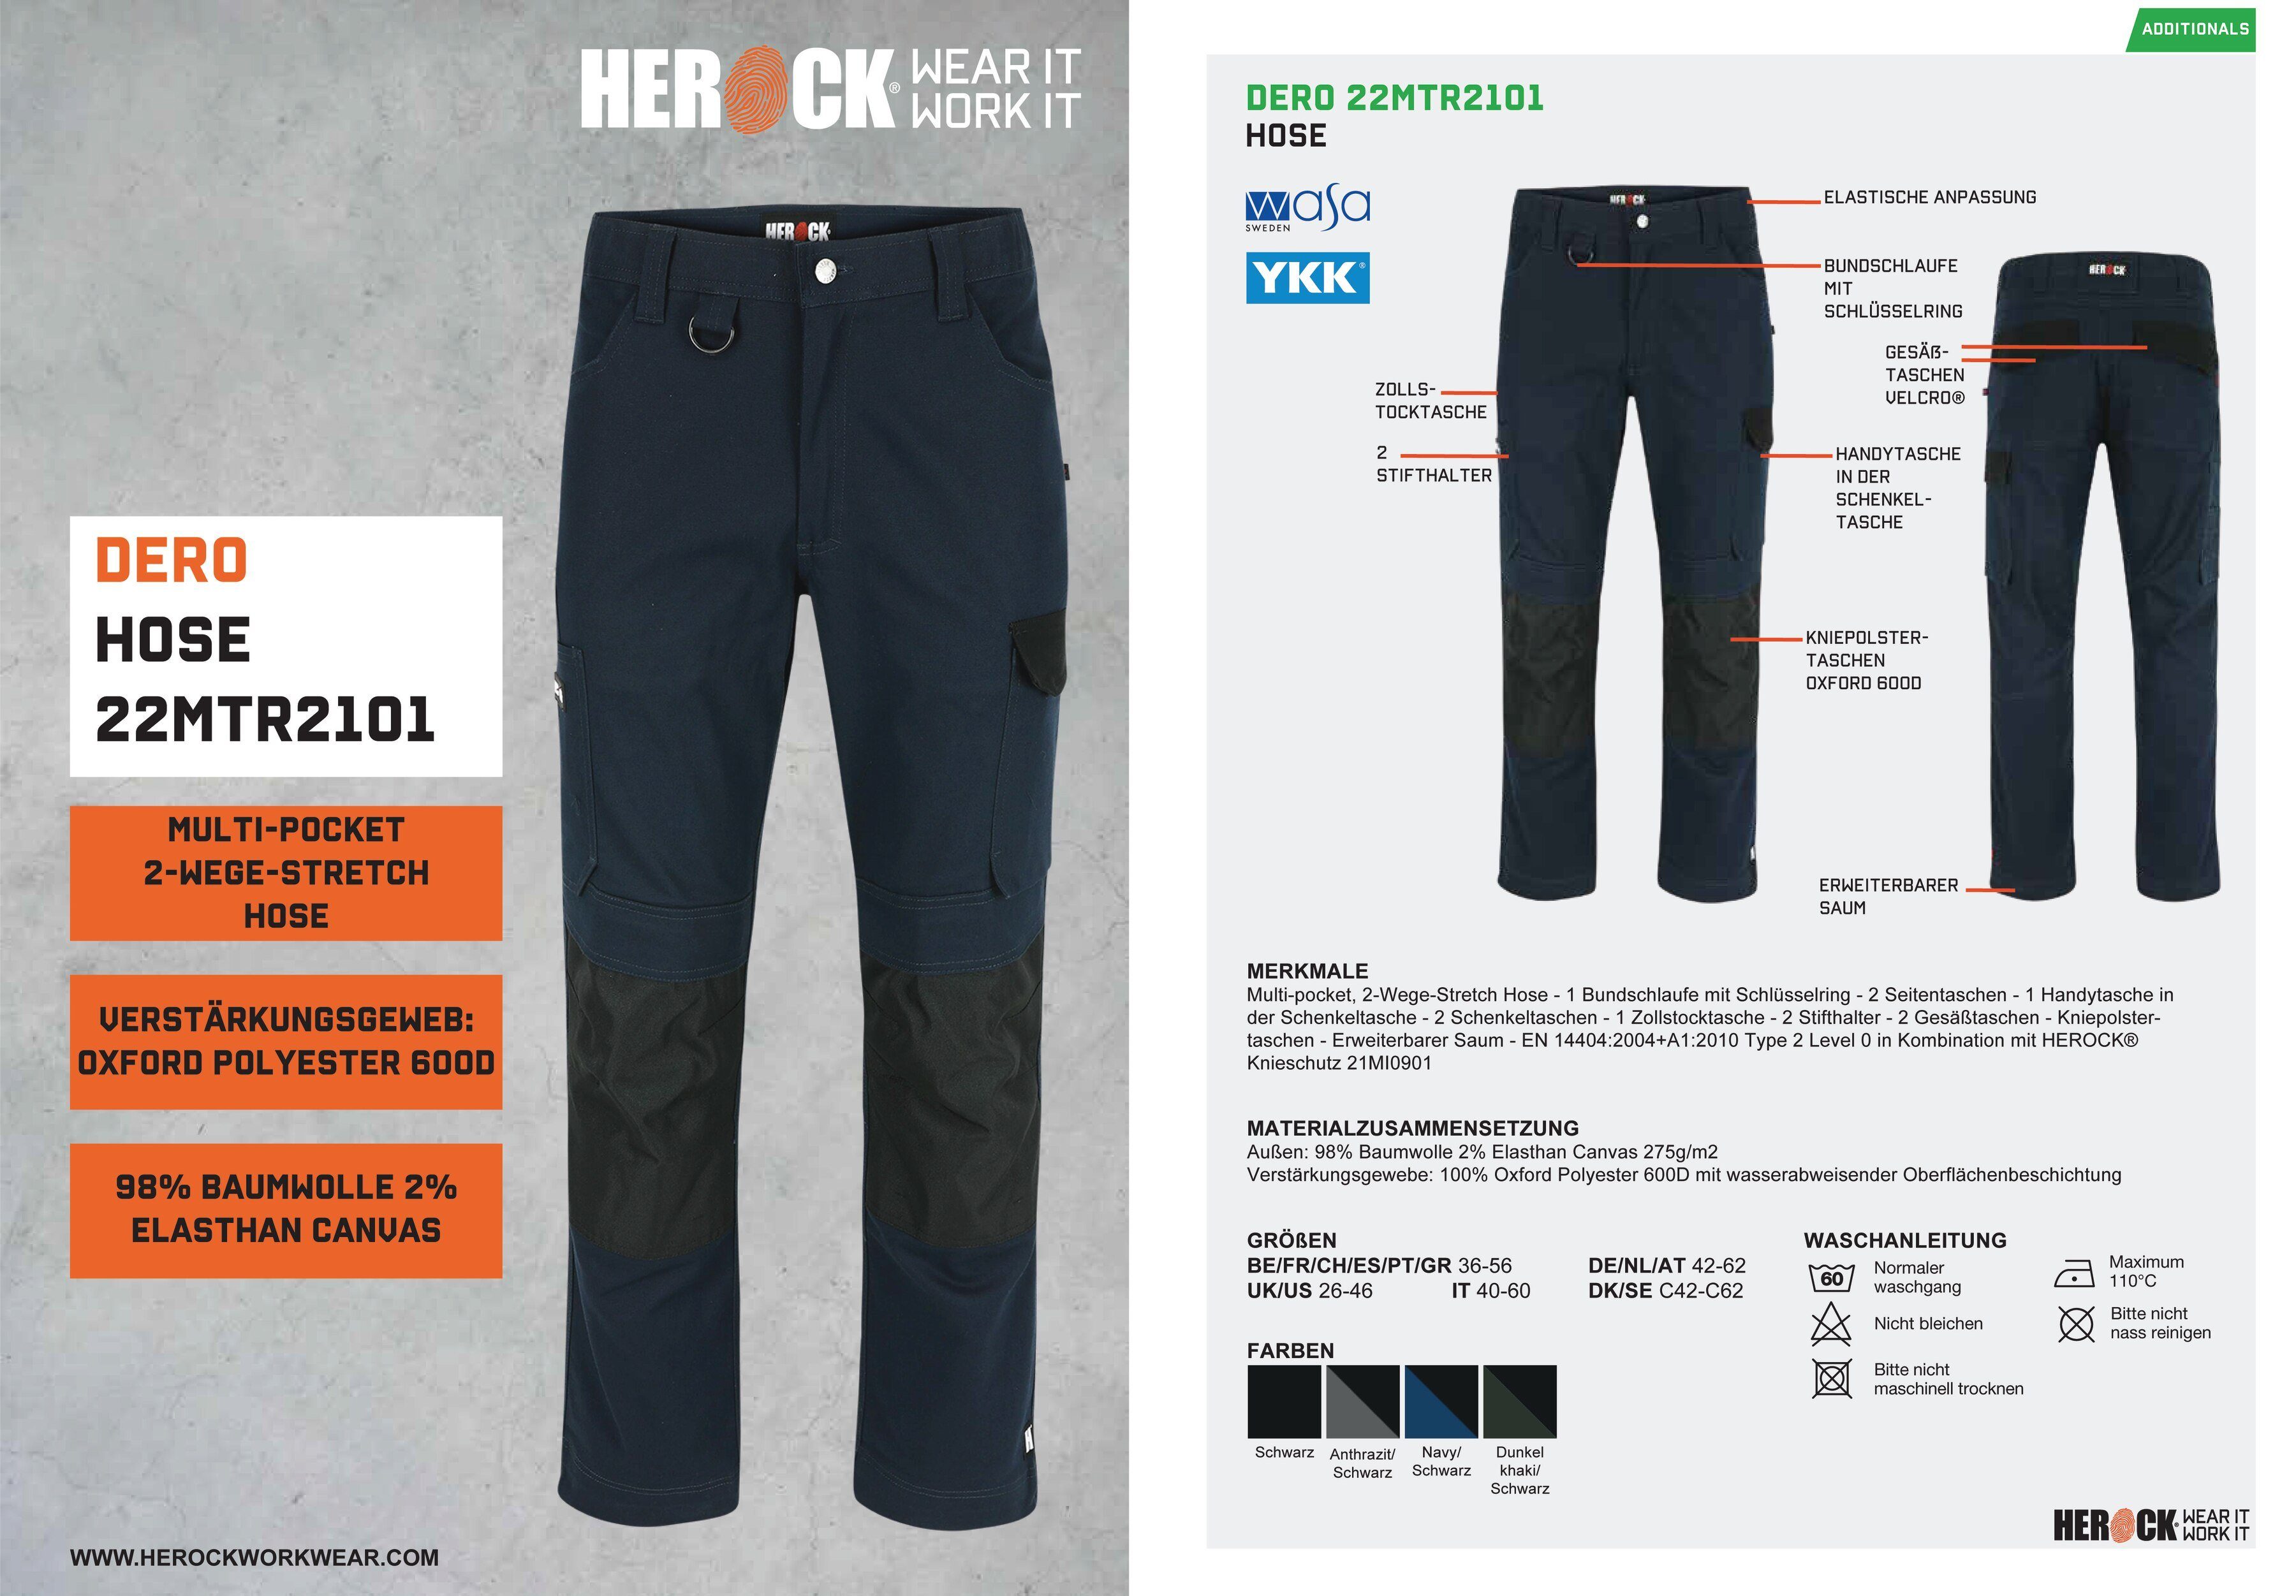 Herock Multi-Pocket, Fit Passform, Arbeitshose marine Slim 2-Wege-Stretch, DERO wasserabweisend